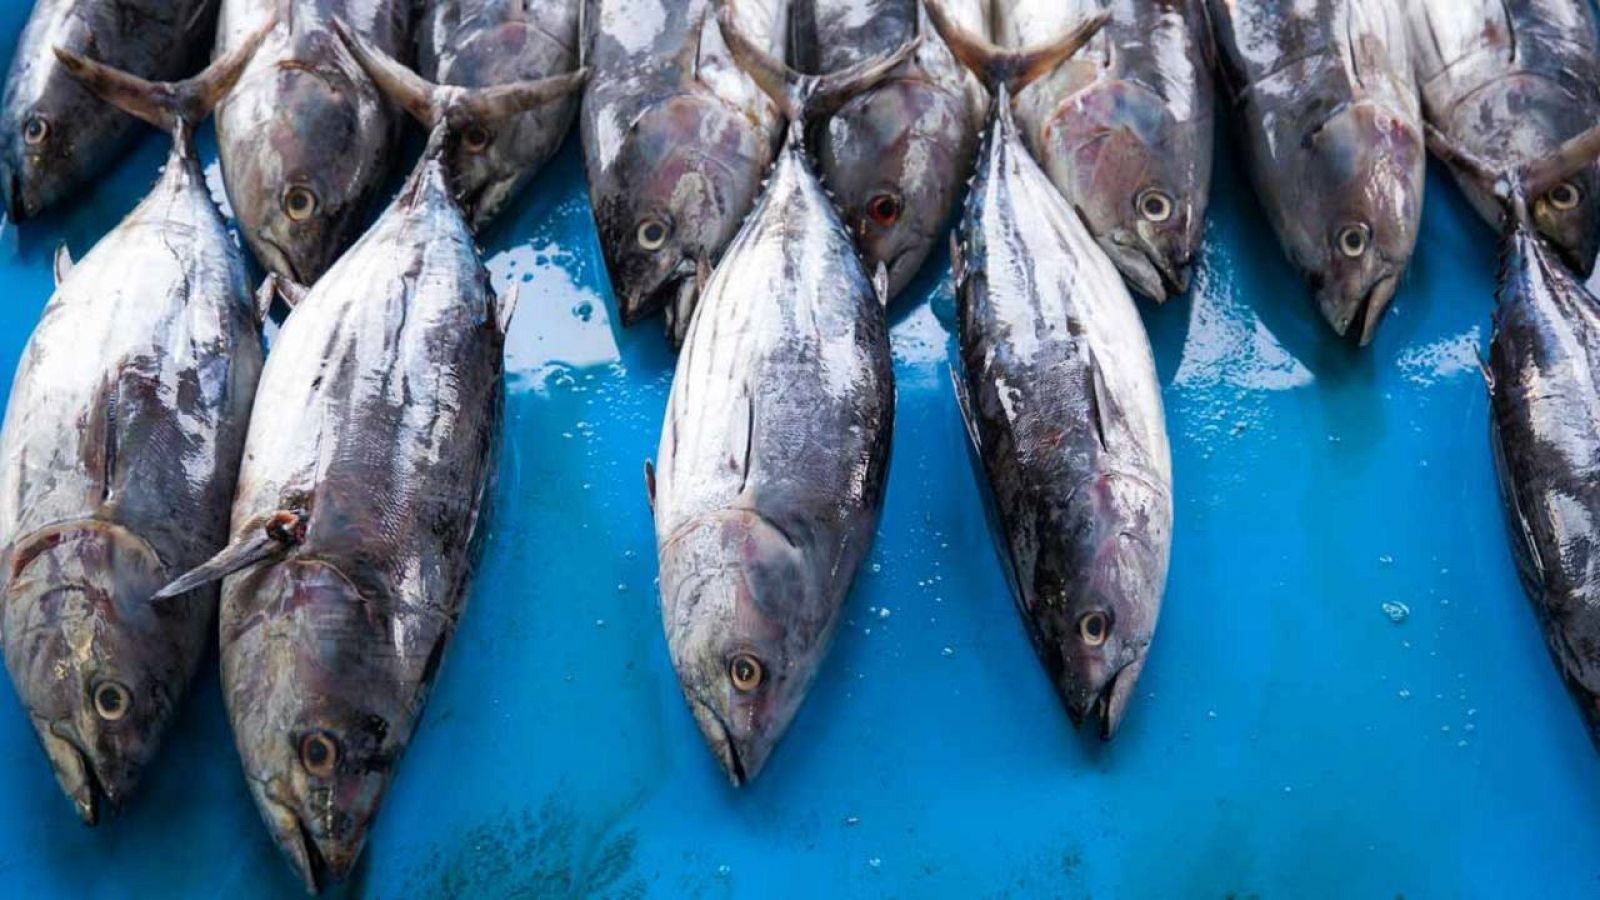 Organizaciones ecologistas como WWFconsideran "urgente" emprender medidas que aseguren la sostenibilidad del atún.